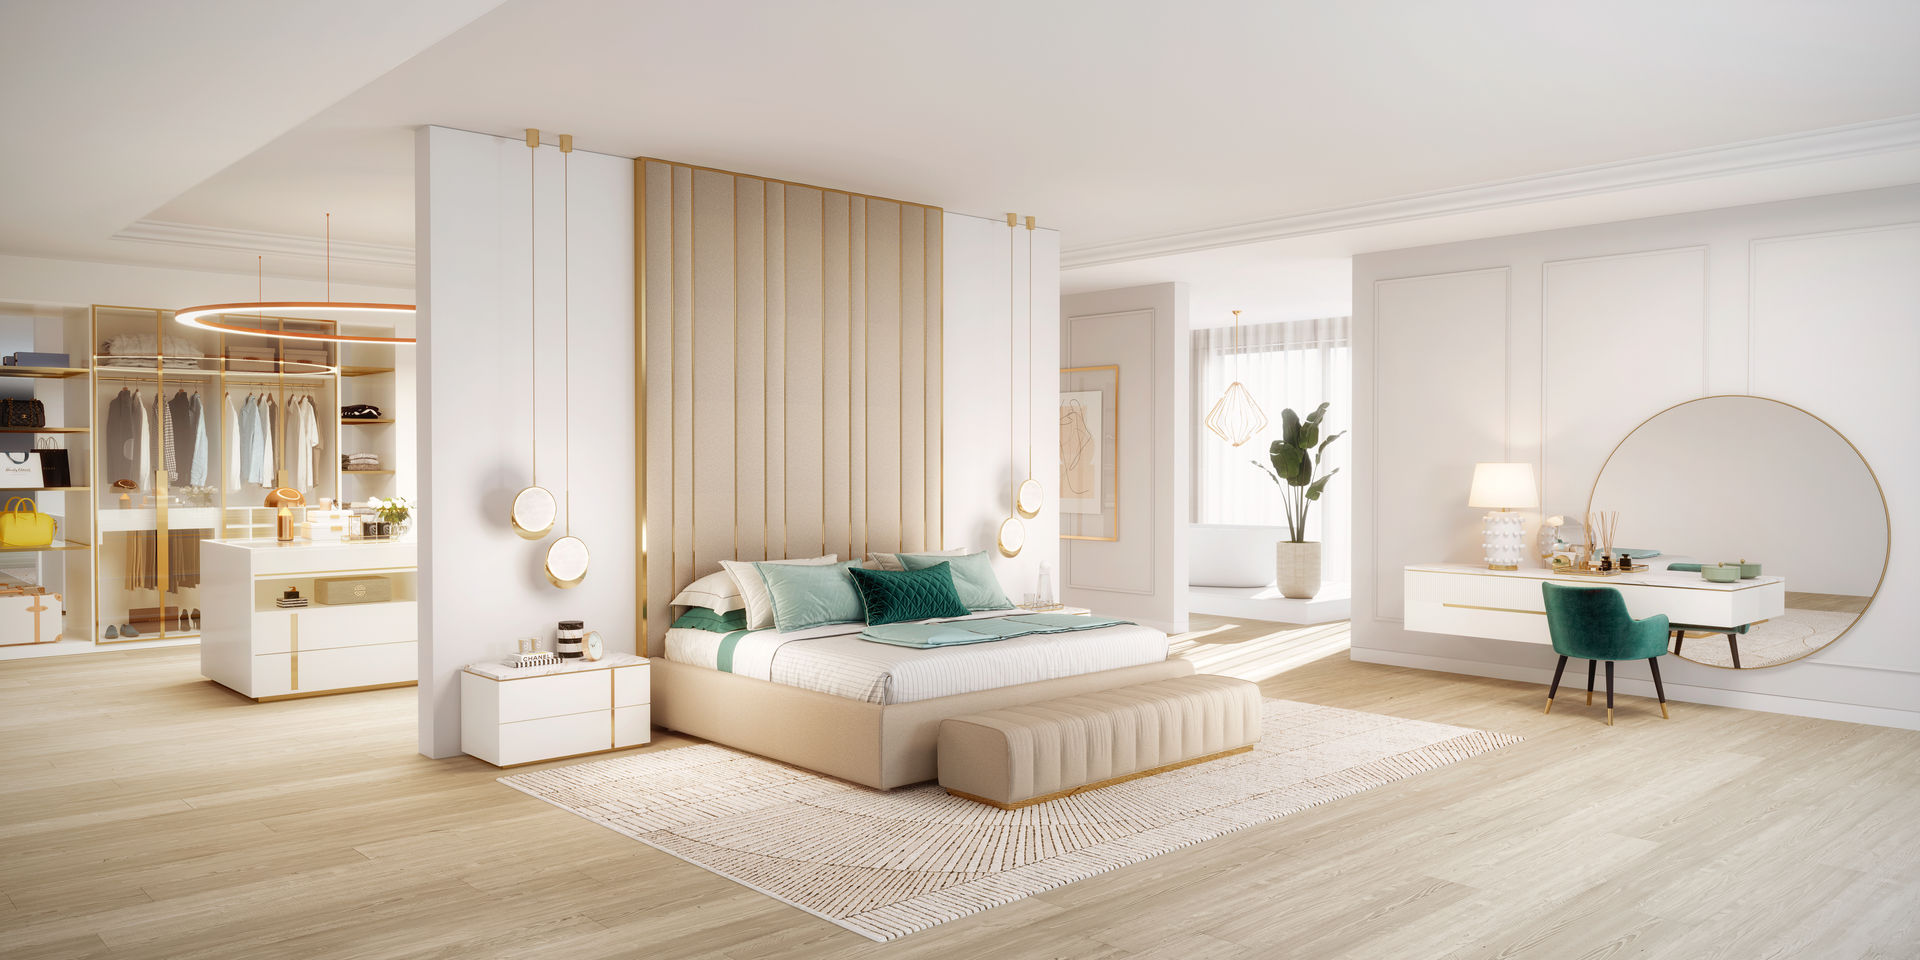 Suite ByOriginal Quartos modernos suite, quarto, cama, mobiliário, exclusivo, requintado, dourado, neutro, open space